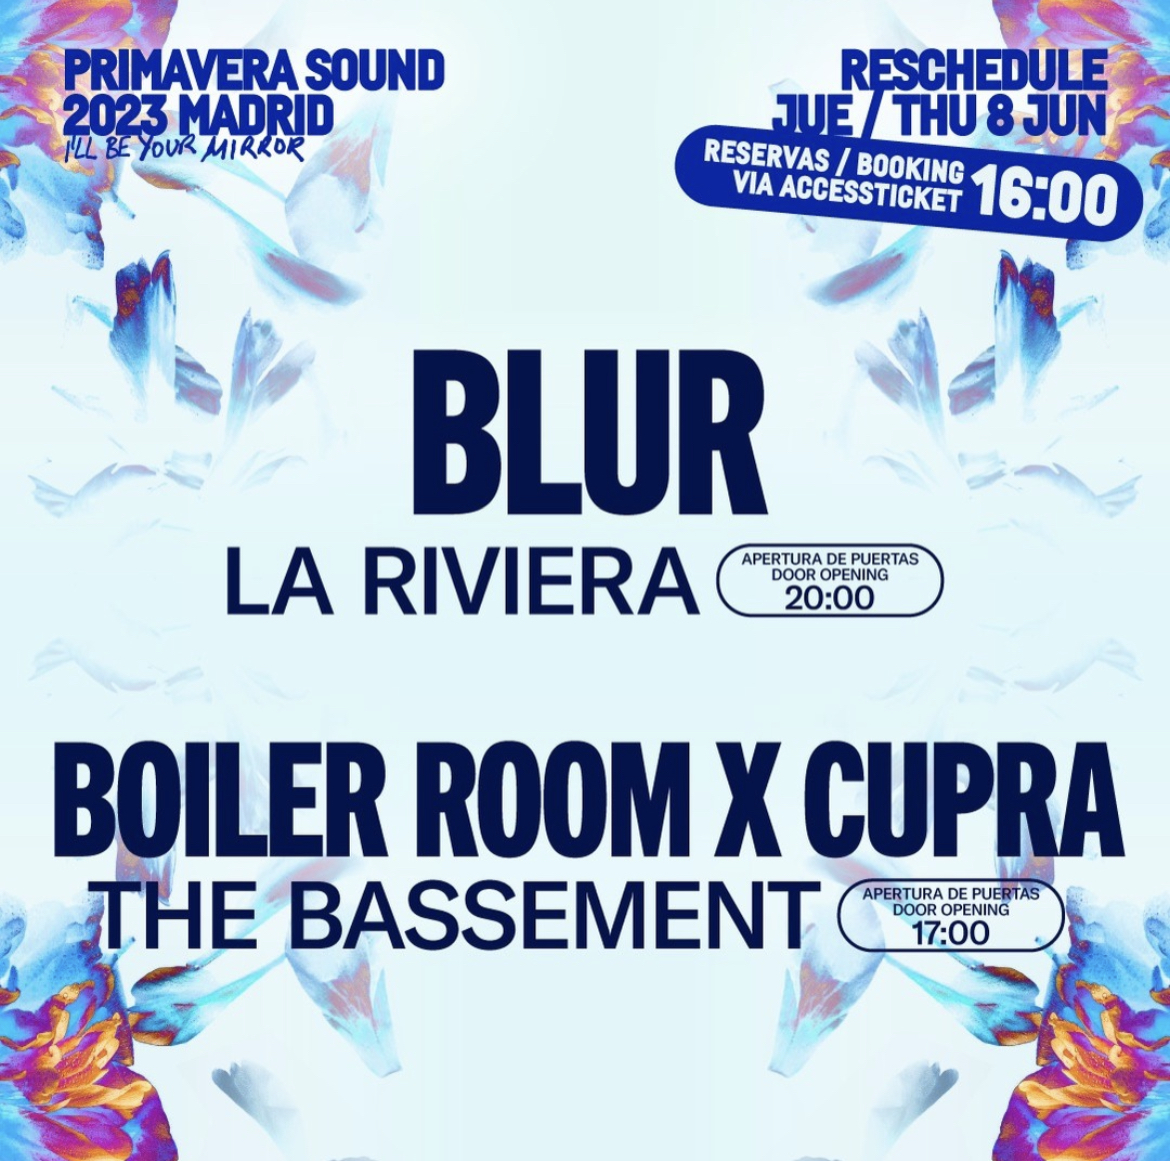 Cartel del Primavera Sound anunciando el cambio de localizacin del concierto de Blur.